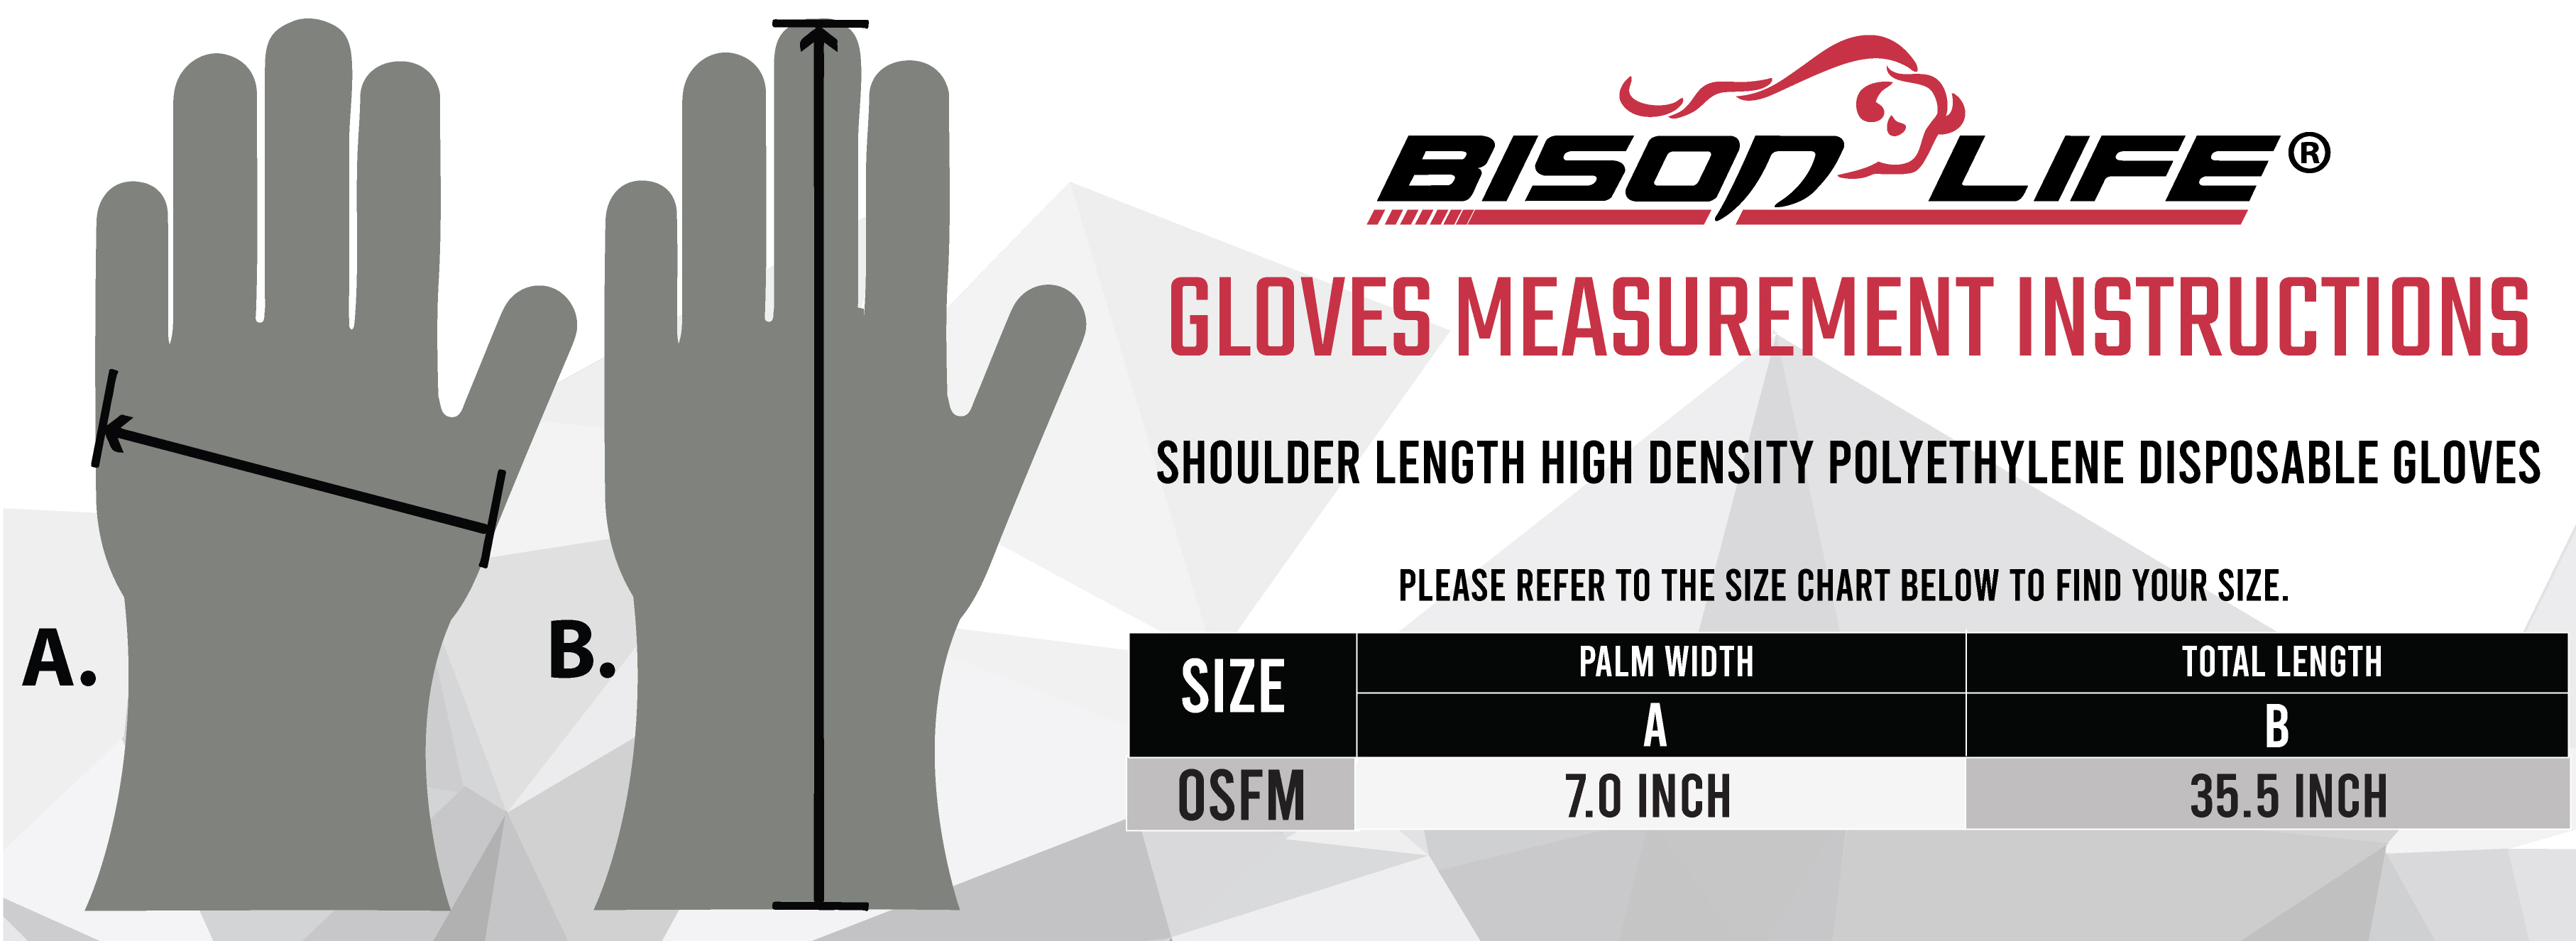 Disposable Food Handling Shoulder Length Poly Gloves Chart